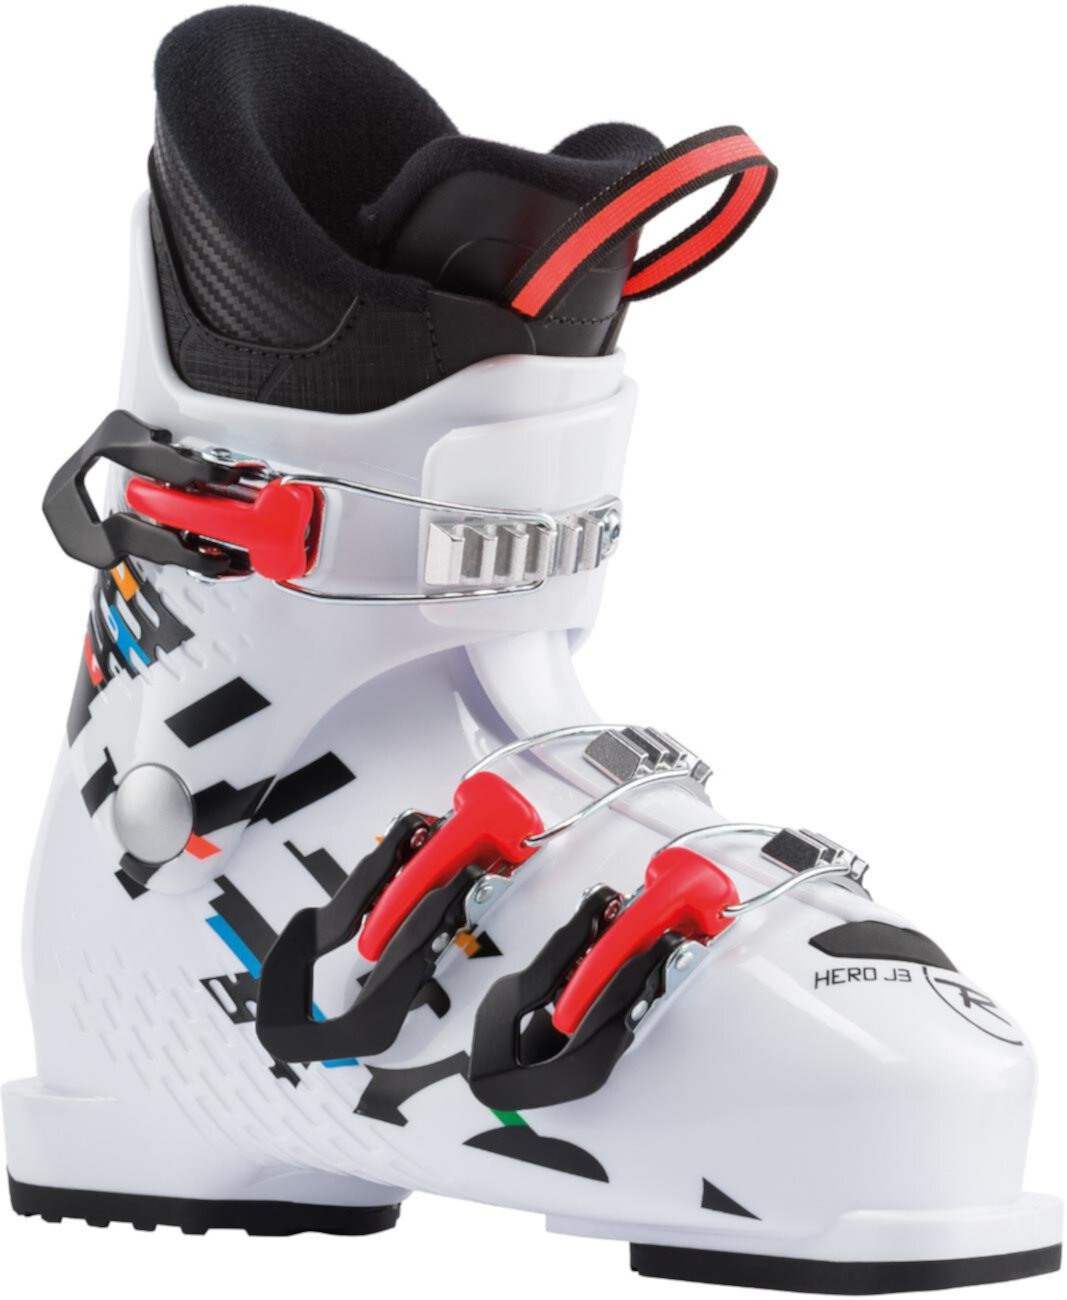 Лыжные ботинки Hero J3 - Детские - 2020/2021 ROSSIGNOL